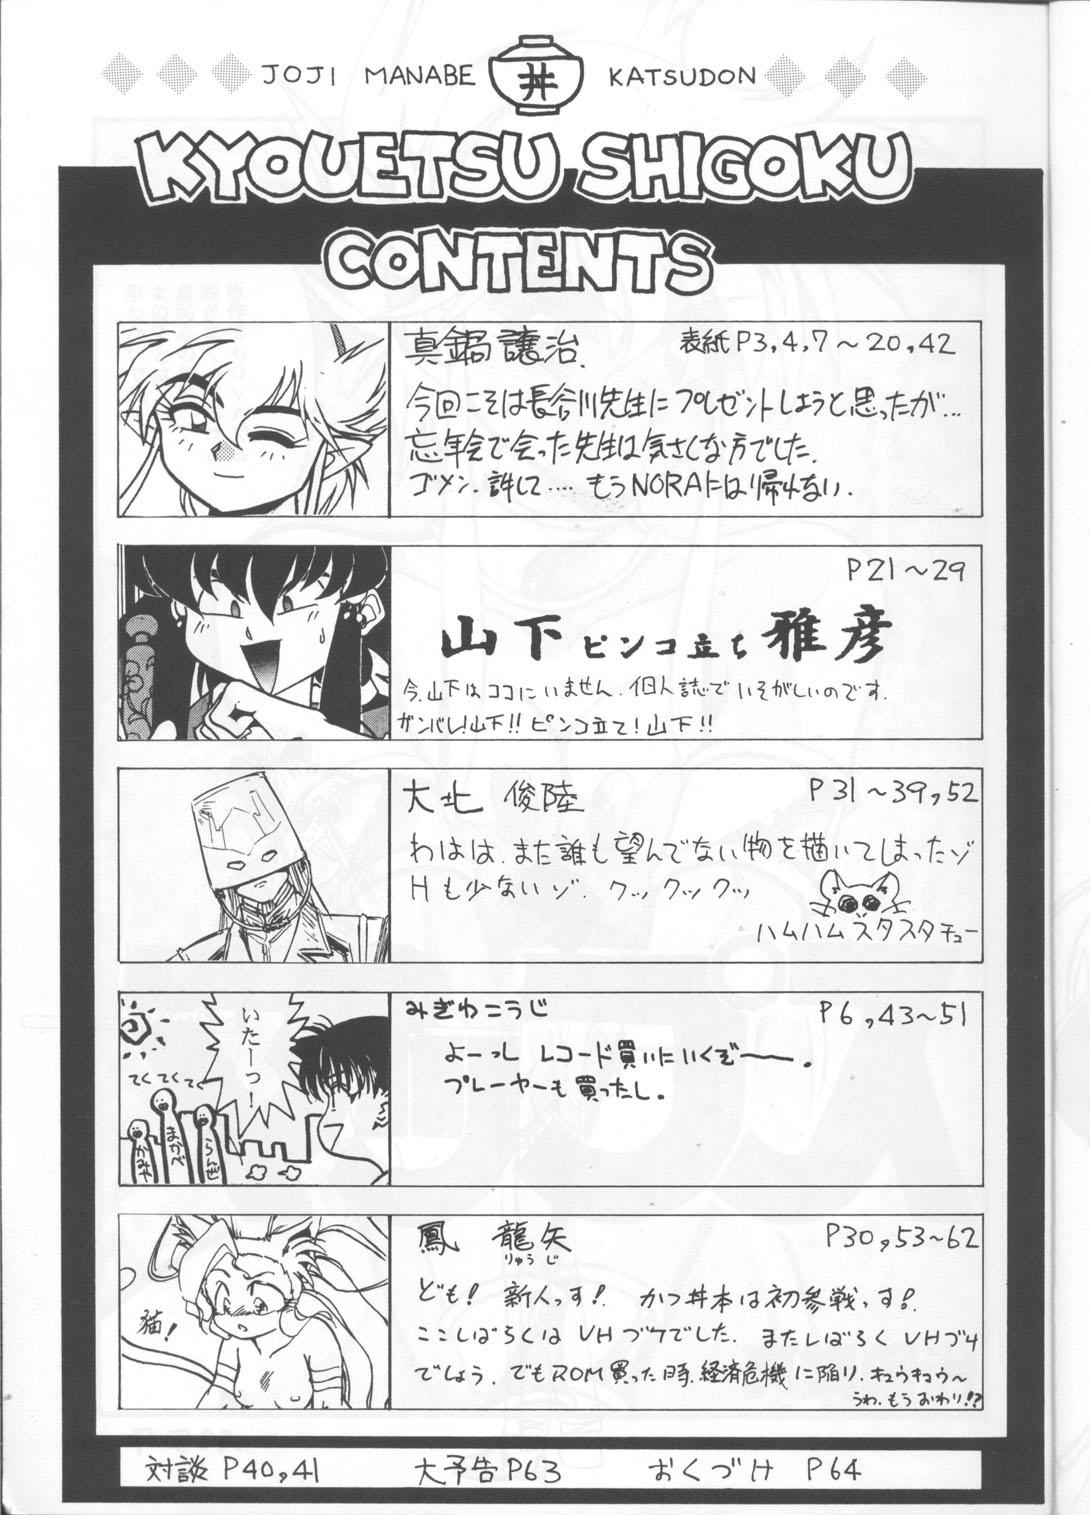 Kashima Kyouetsu Shigoku - Darkstalkers Tenchi muyo Gundam wing Dirty pair flash Armitage iii Tokimeki tonight Maps Sissy - Page 4